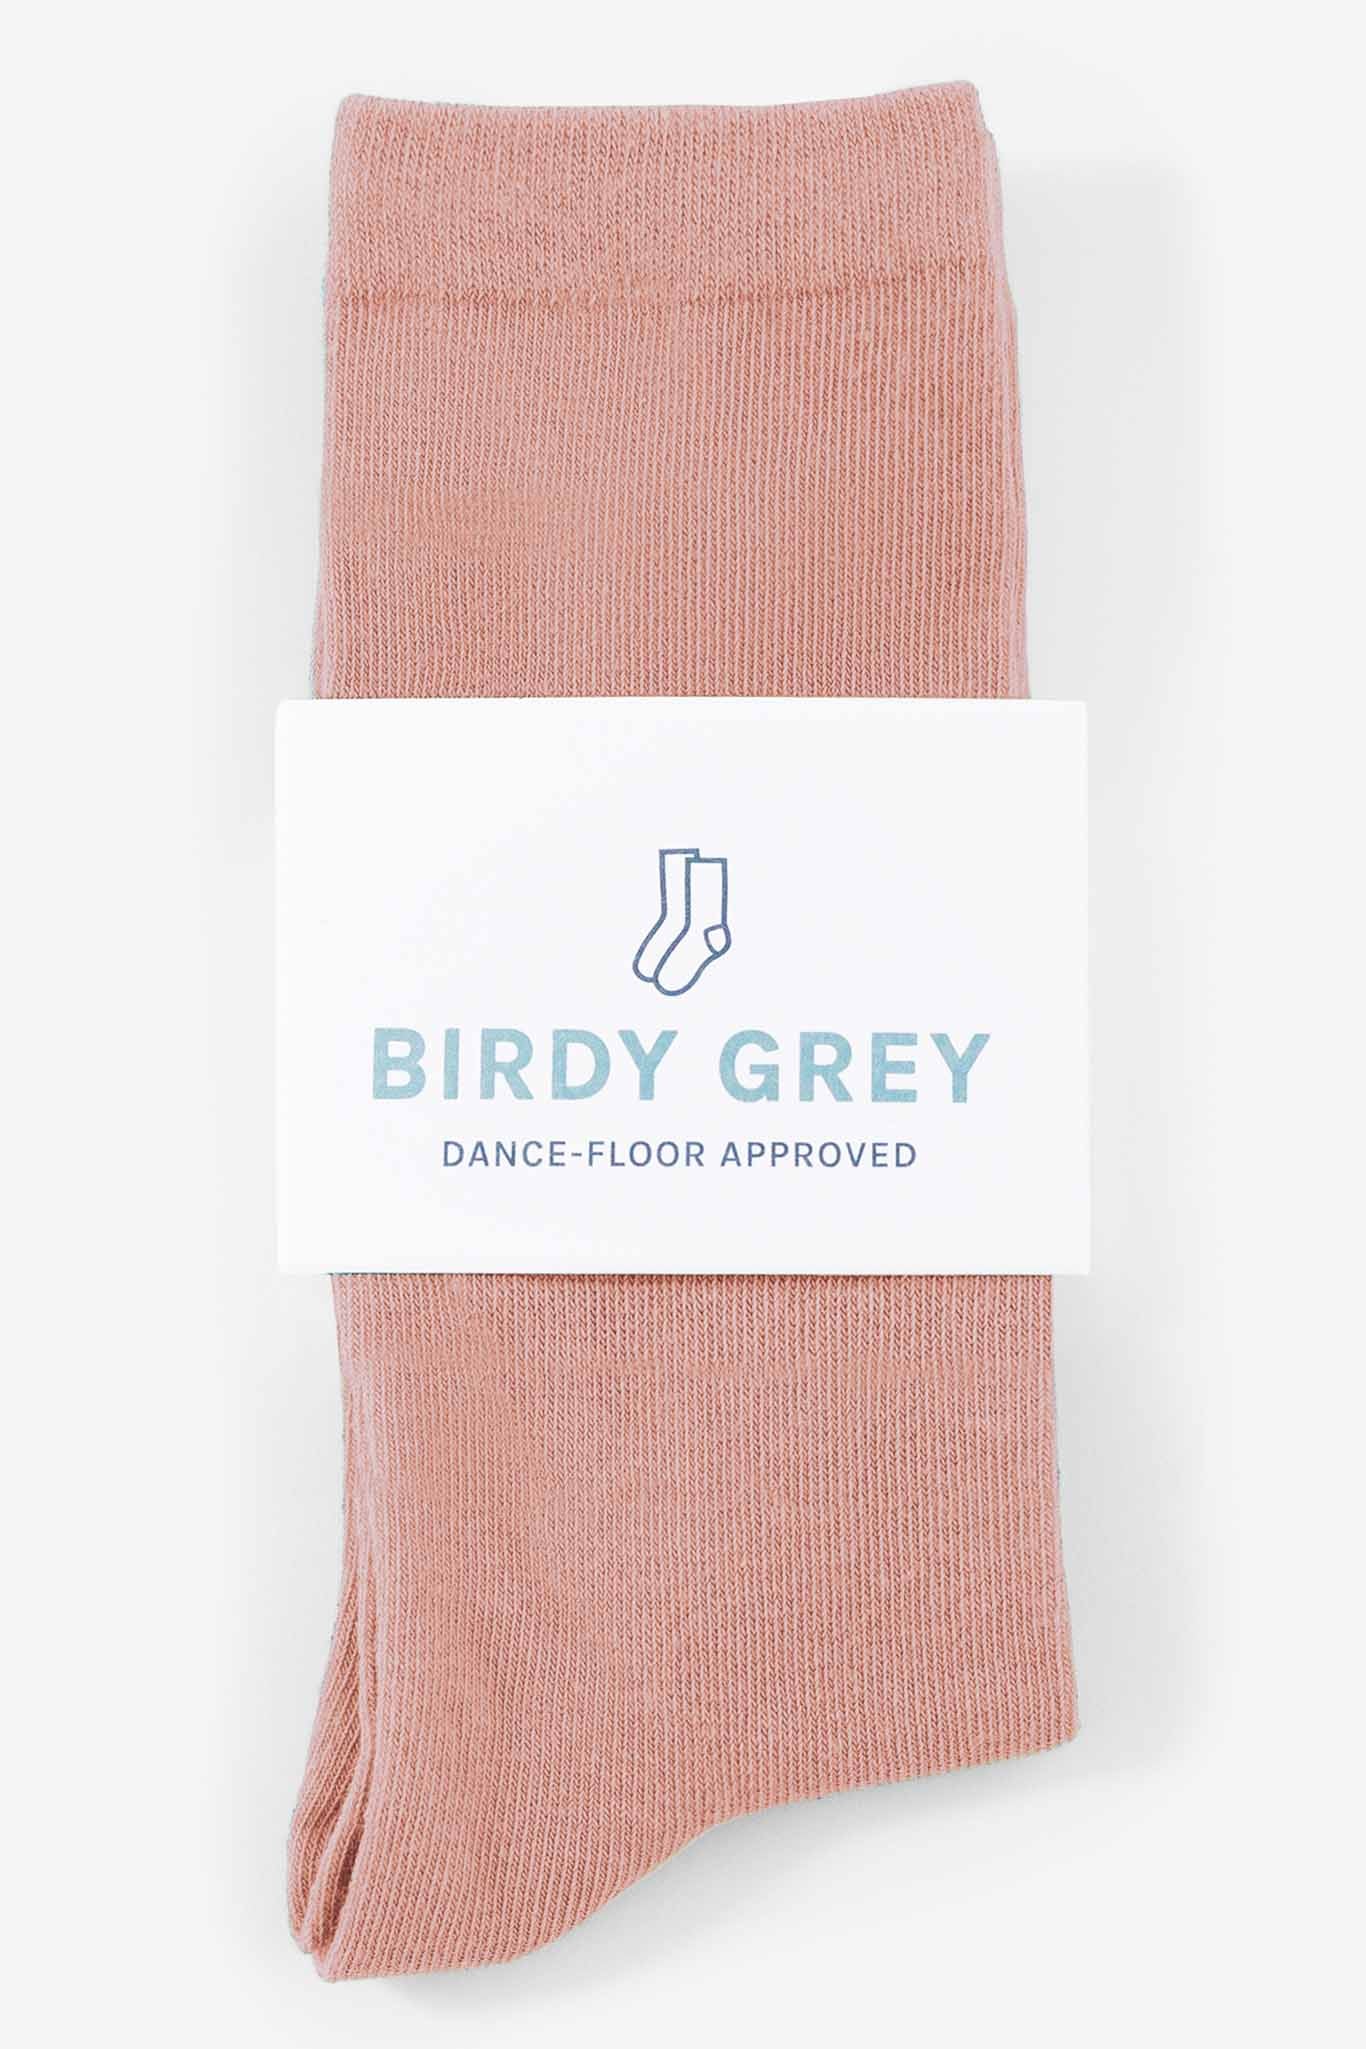 Dusty Rose Groomsmen Socks by Birdy Grey